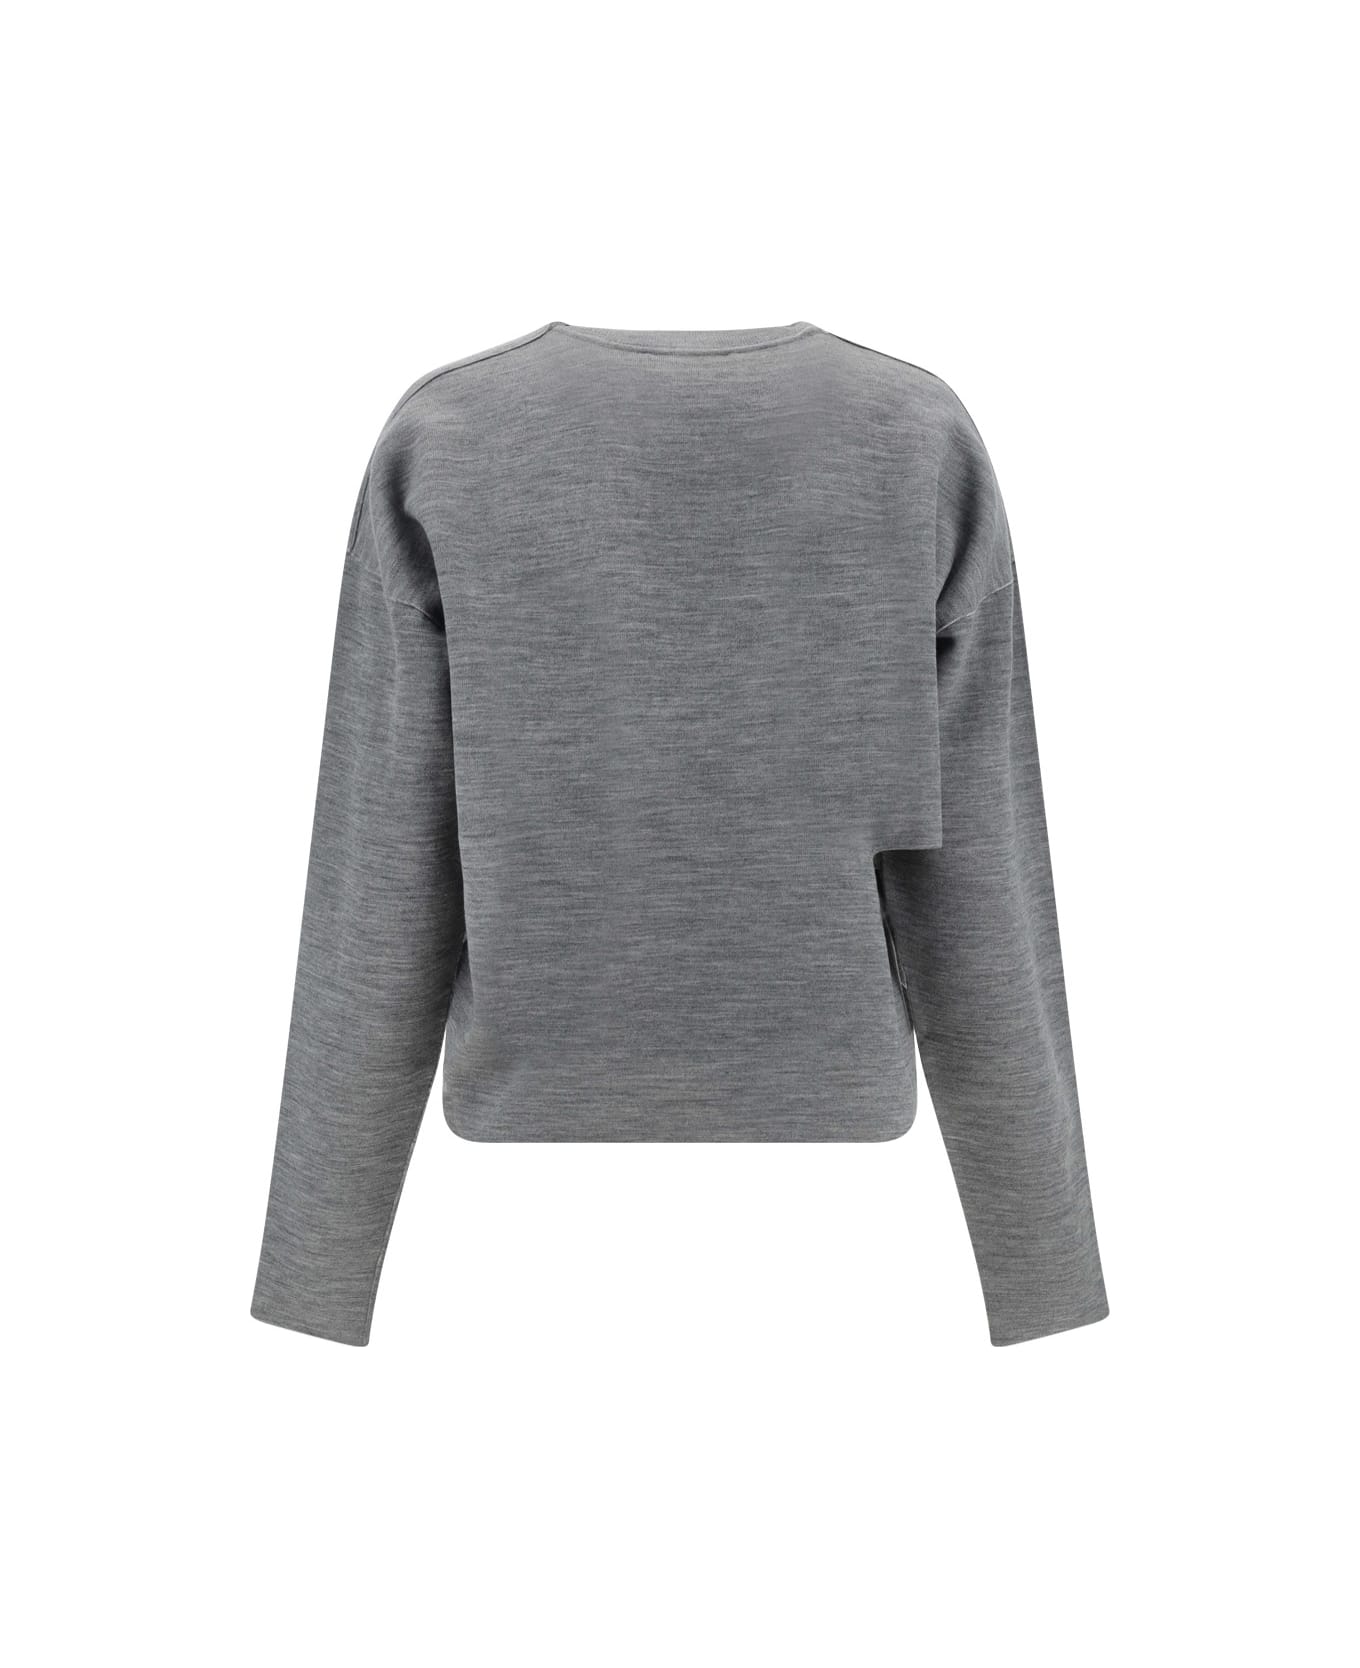 Fendi Sweatshirt - Grey Melange